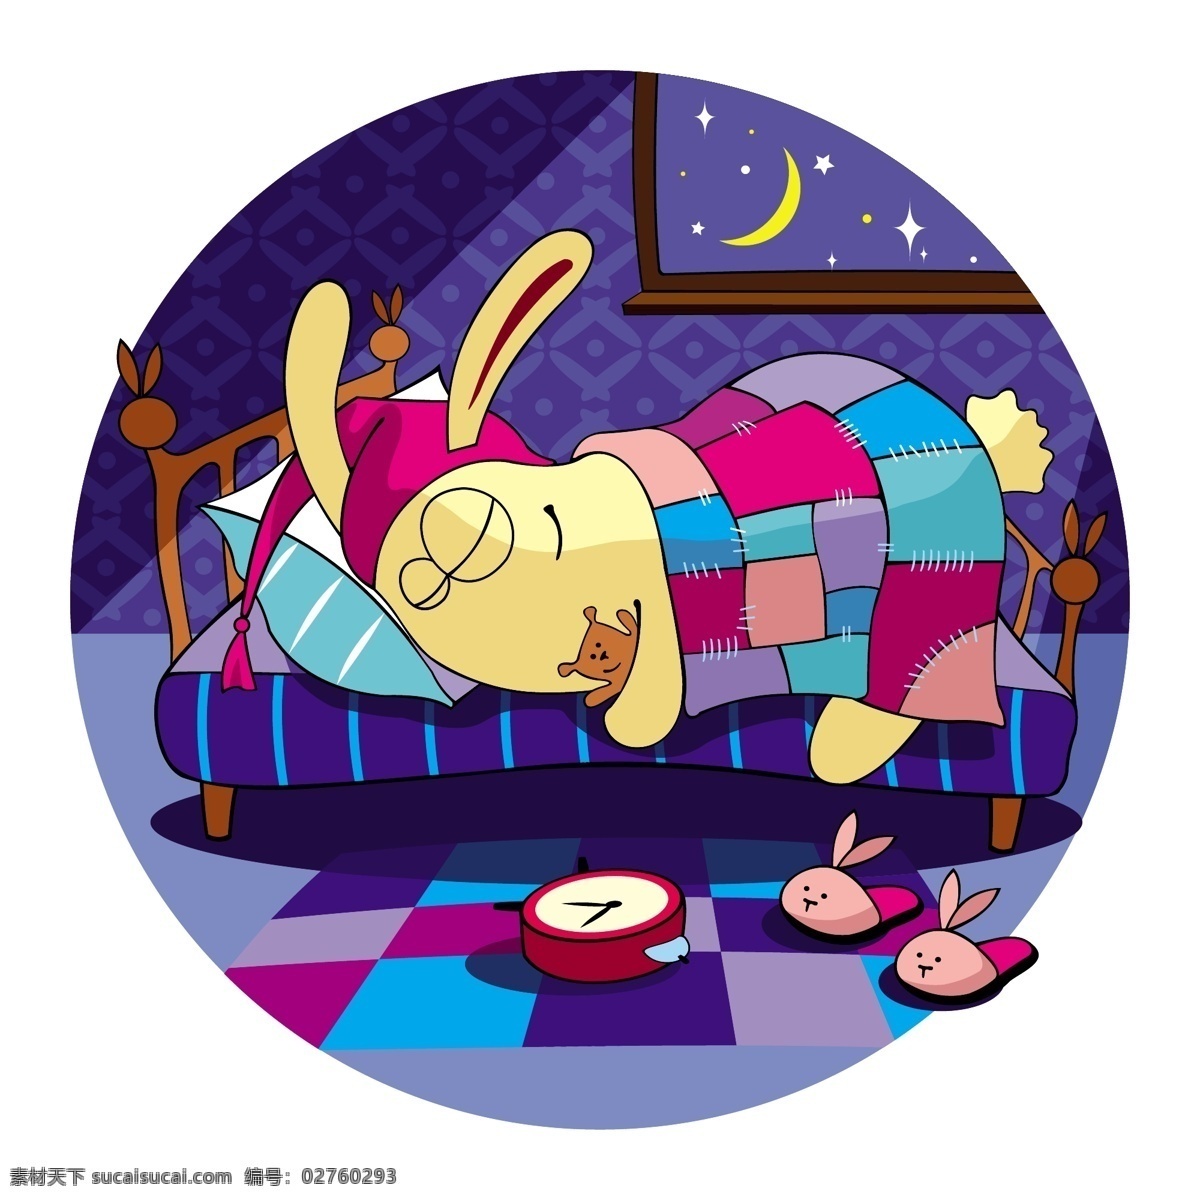 睡梦 里 孩子 月亮 矢量 兔子 卡通 床 童话 在月亮上 睡梦中 对话框 夜晚 月球 插画 星空